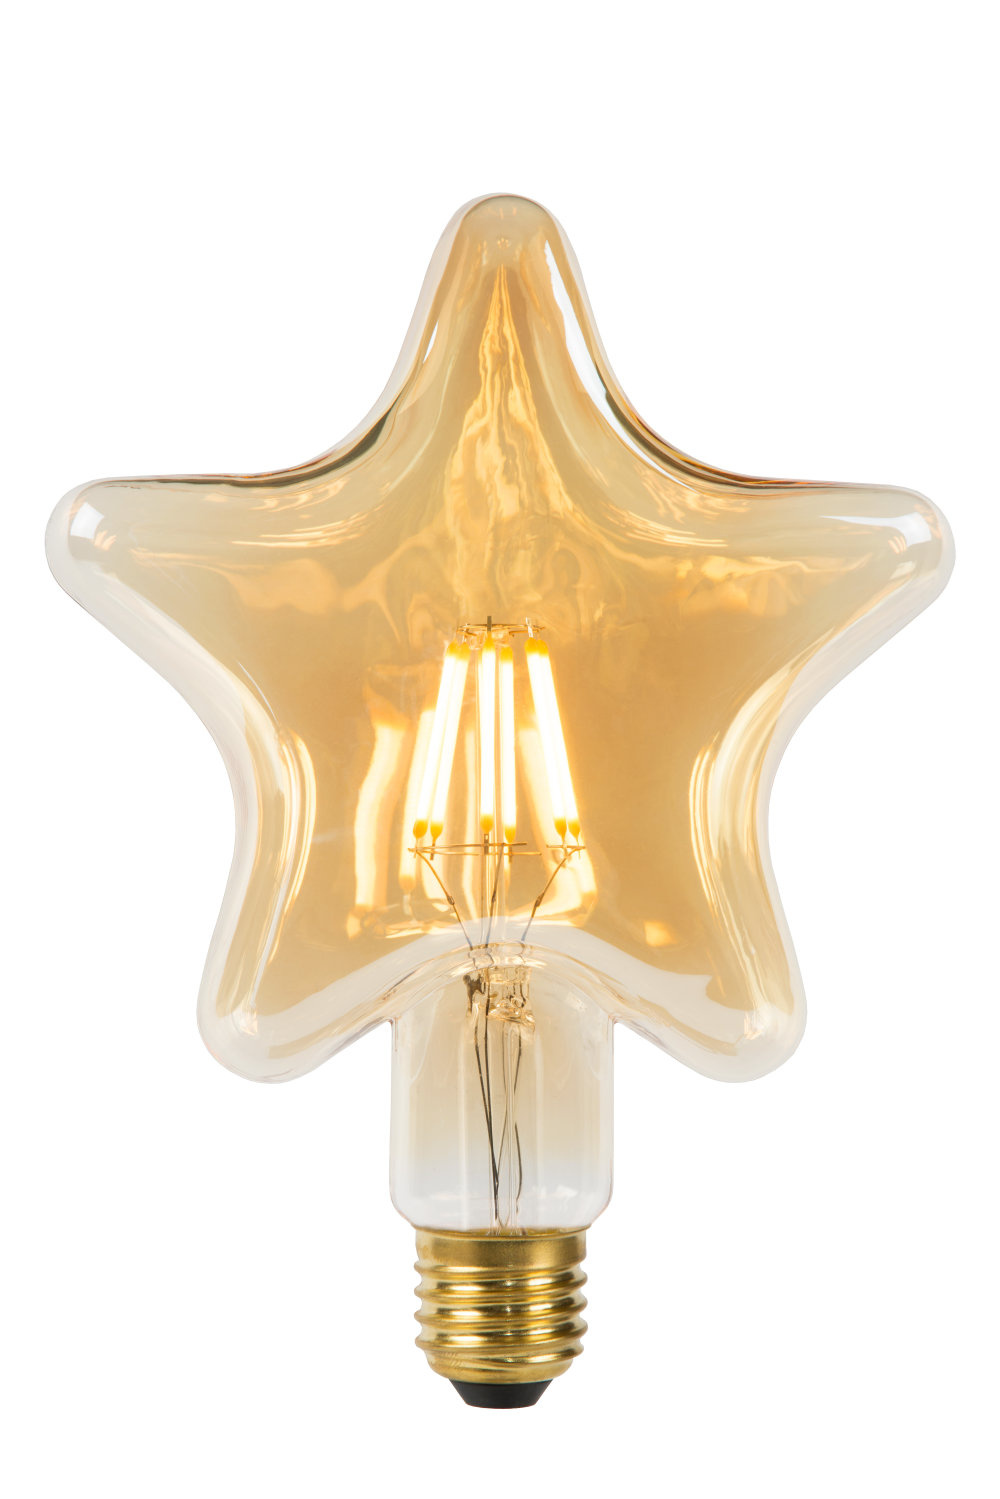 STAR Filament lamp Ø 6 cm LED E27 1x7W 2200K Amber